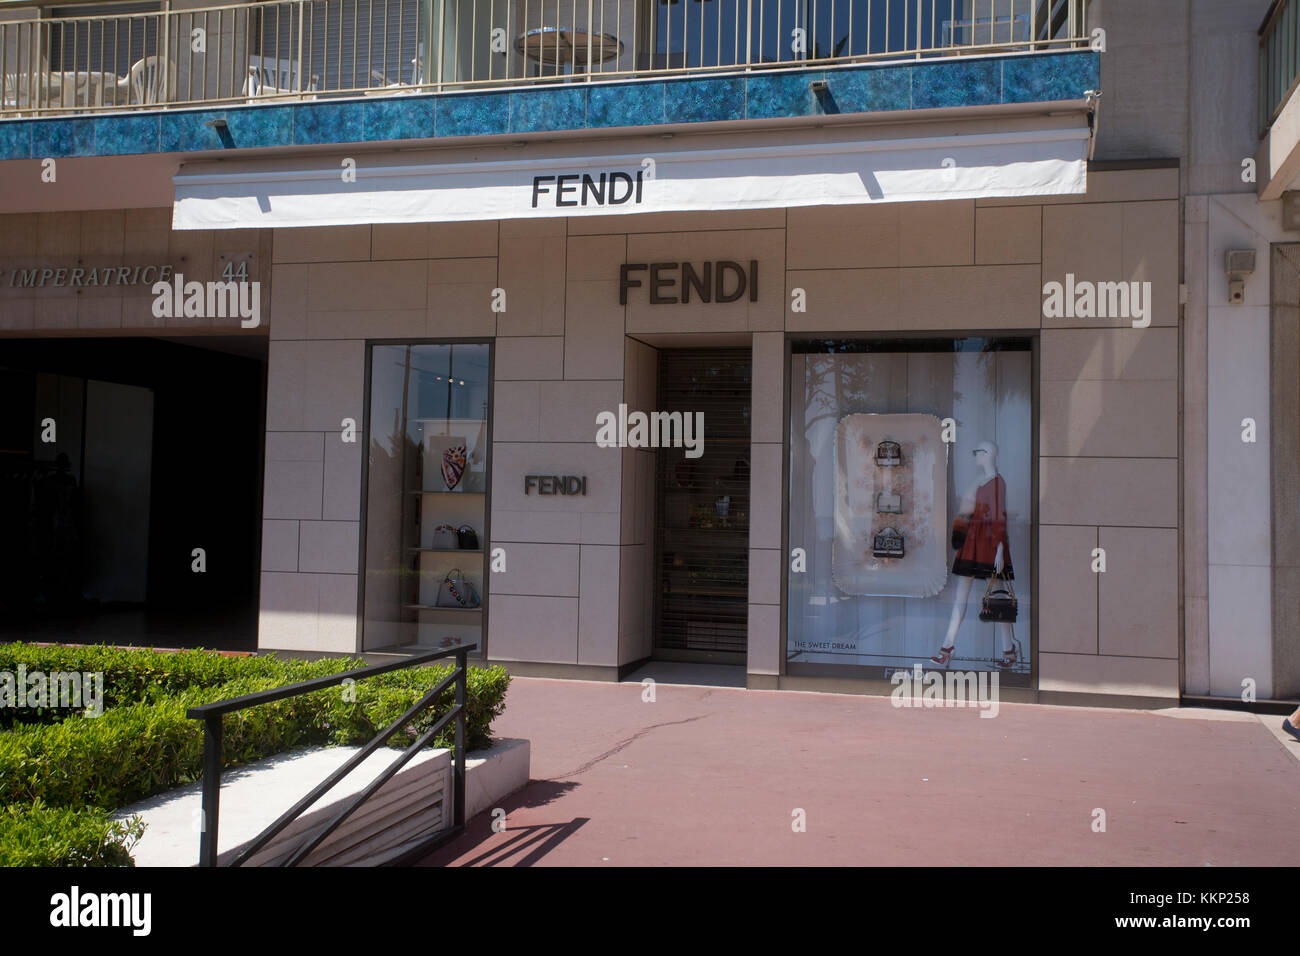 Fendi designer shop, Boulevard de la Croisette, Cannes Stock Photo